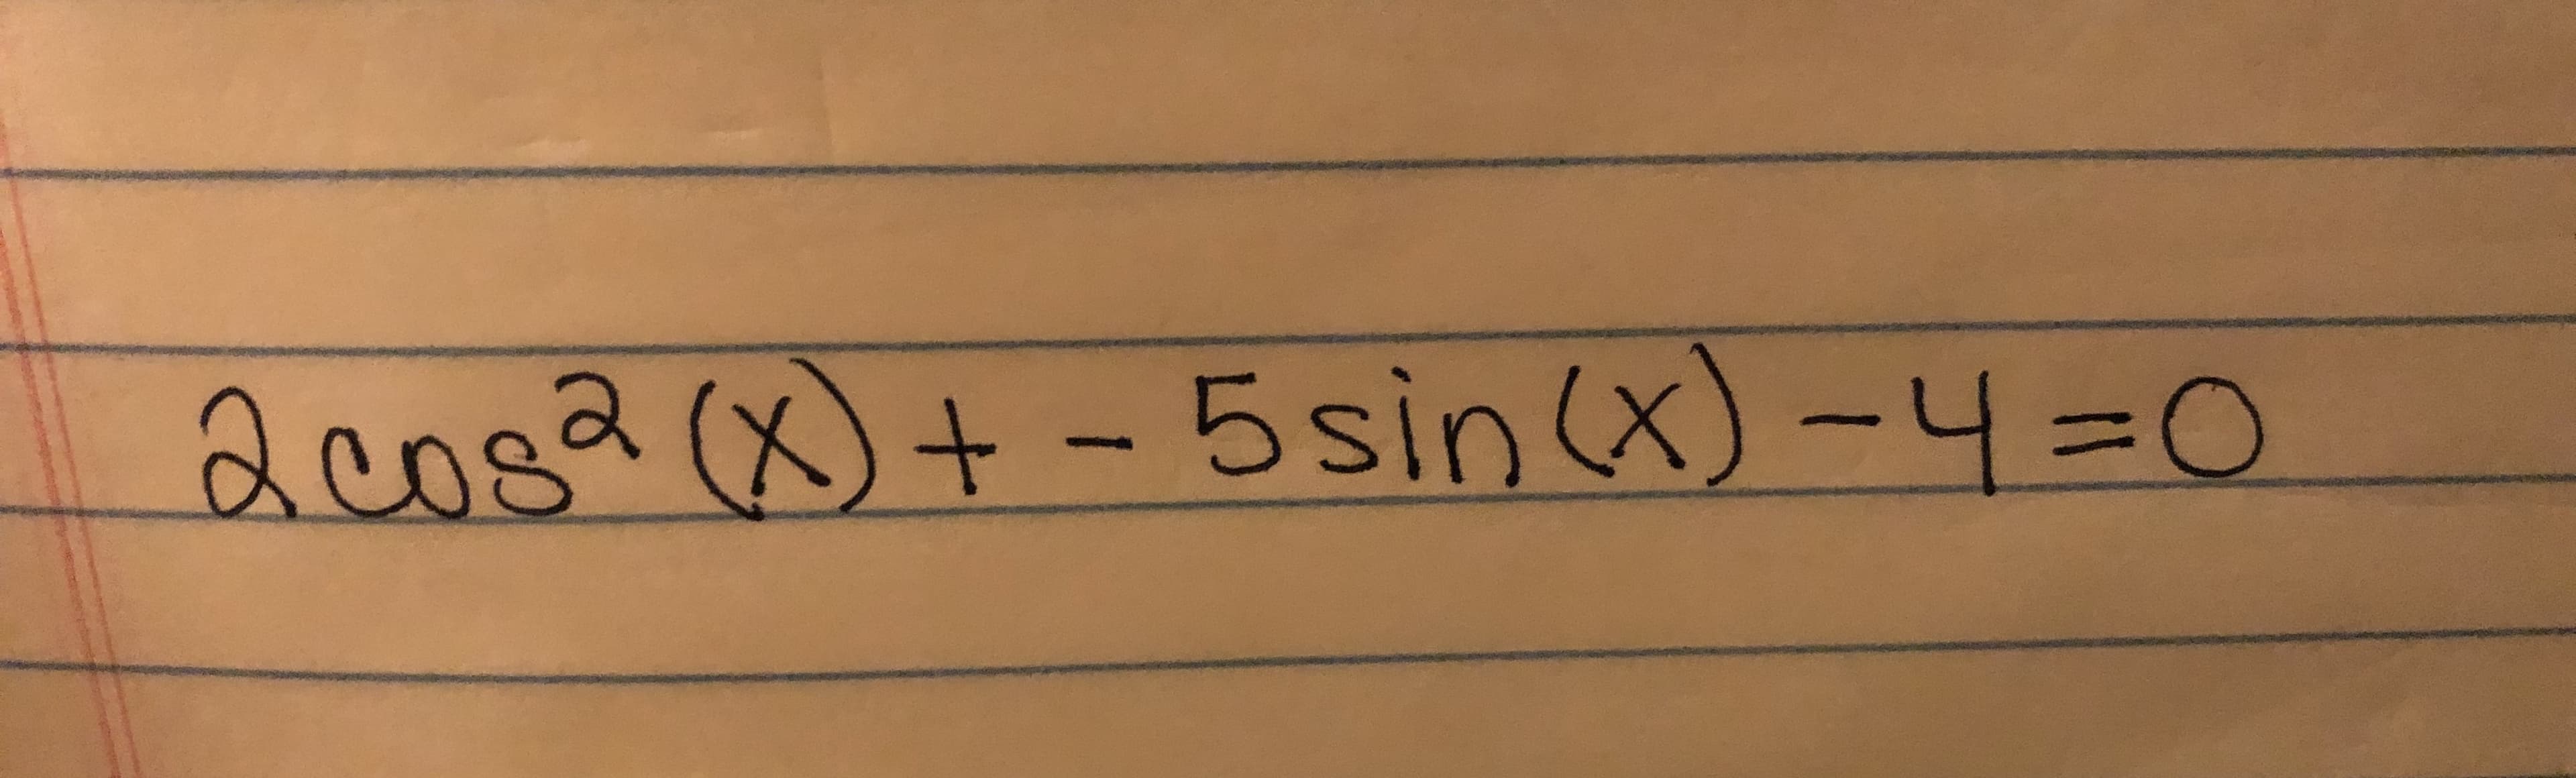 acosa (x)+-5sin (x)-4-O
